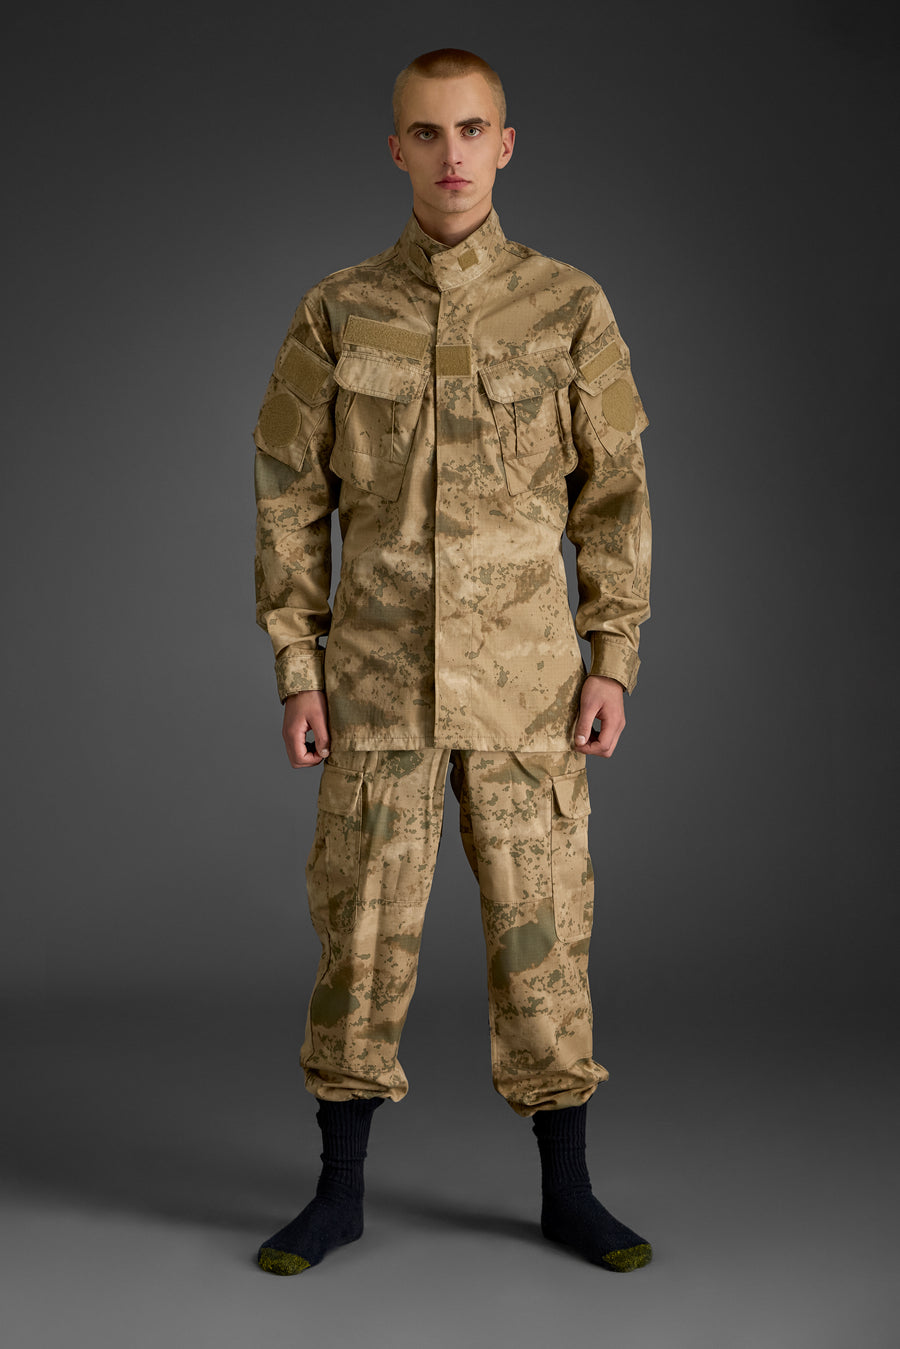 Desert Camouflage BDU designed for Gendarmerie forces